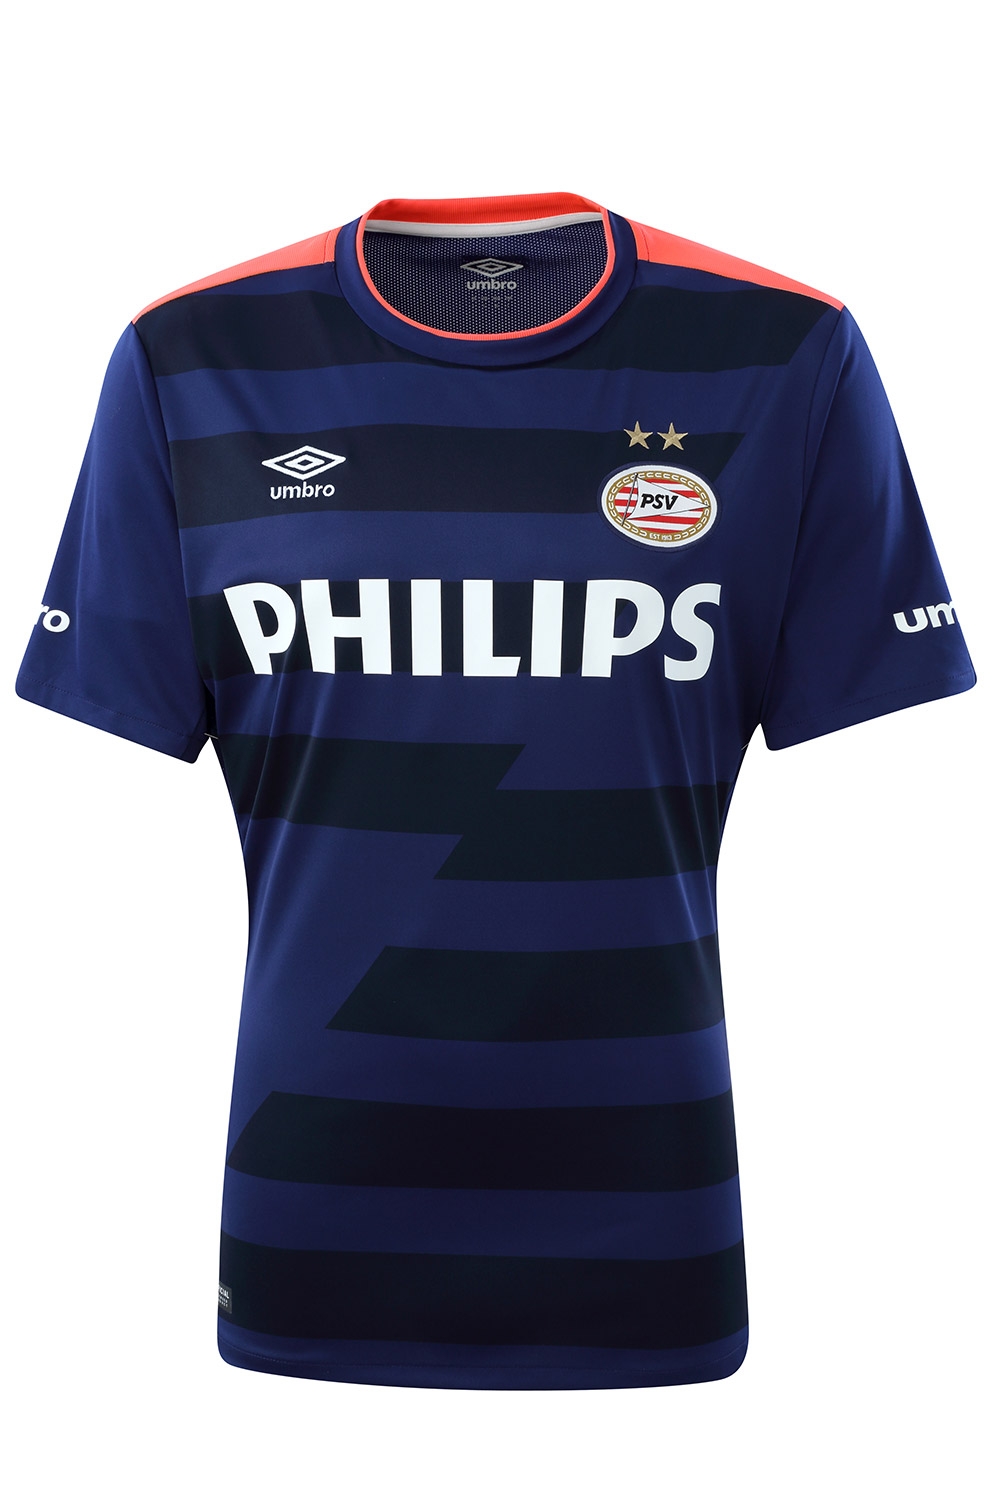 Los nuevos uniformes del PSV para la temporada 2015/16 INVICTOS